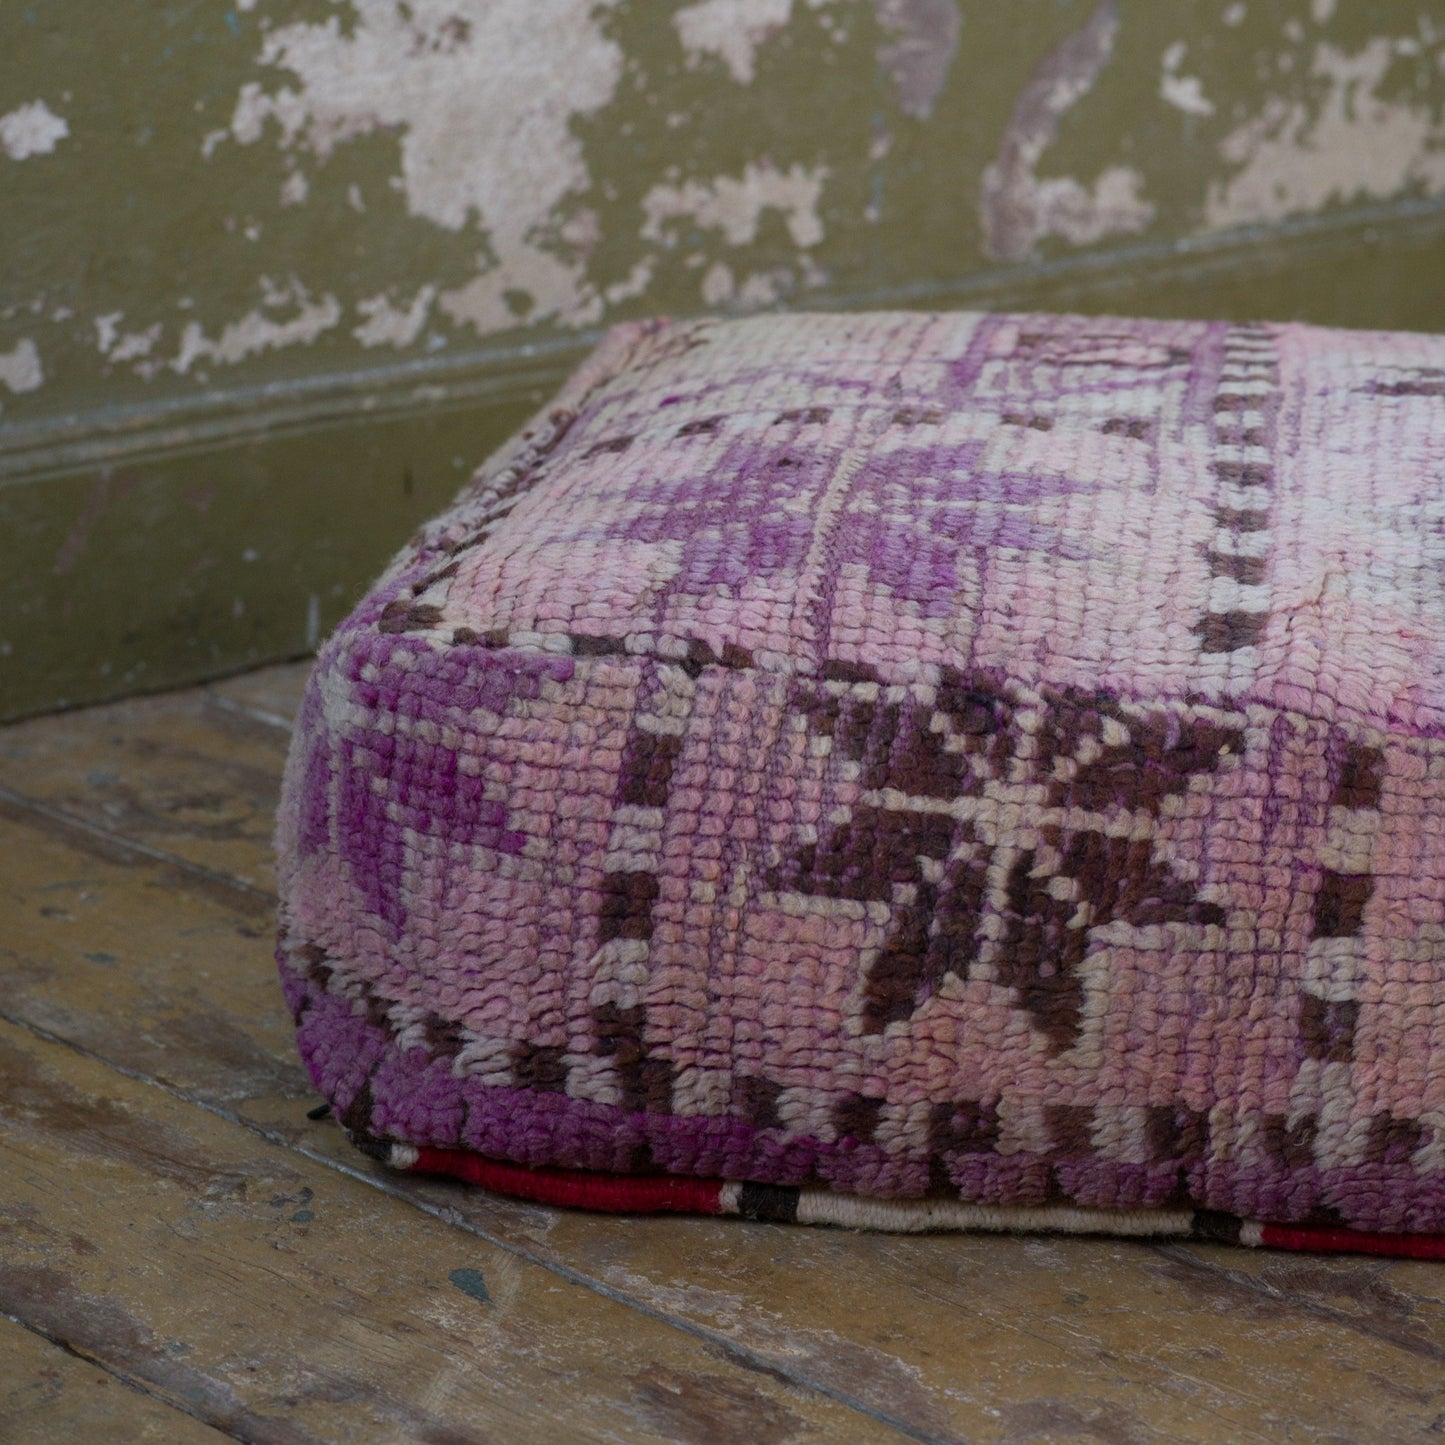 Marockansk Inredning sittpuff handgjord i ull  Atlas bergen Marocko